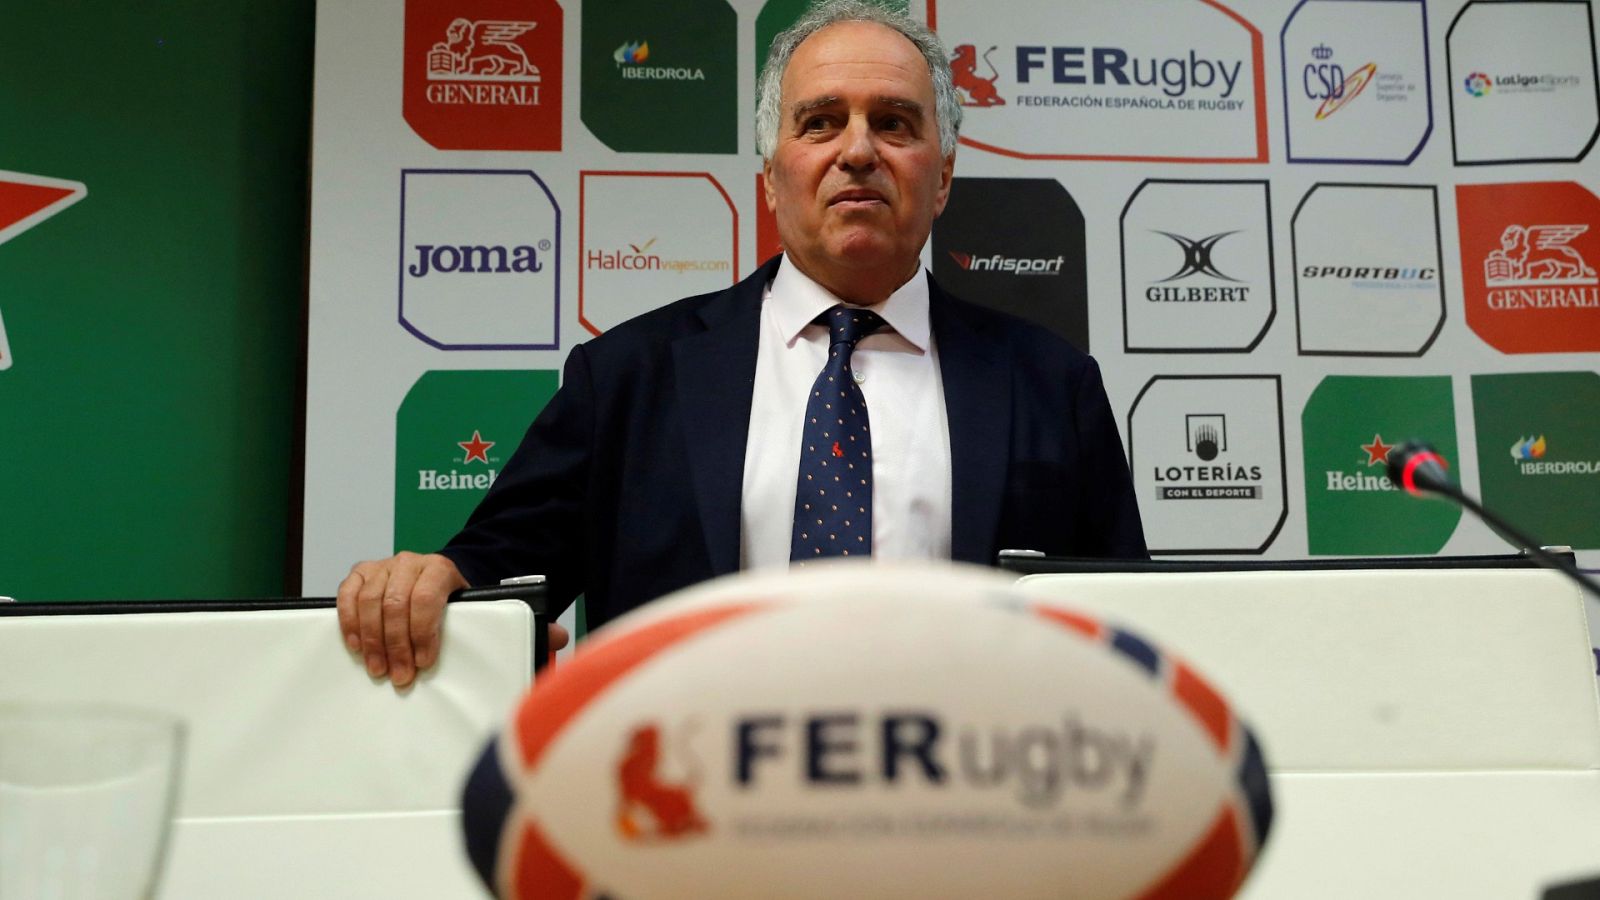 Alfonso Feijoo, reelegido presidente de la Federación Española de Rugby